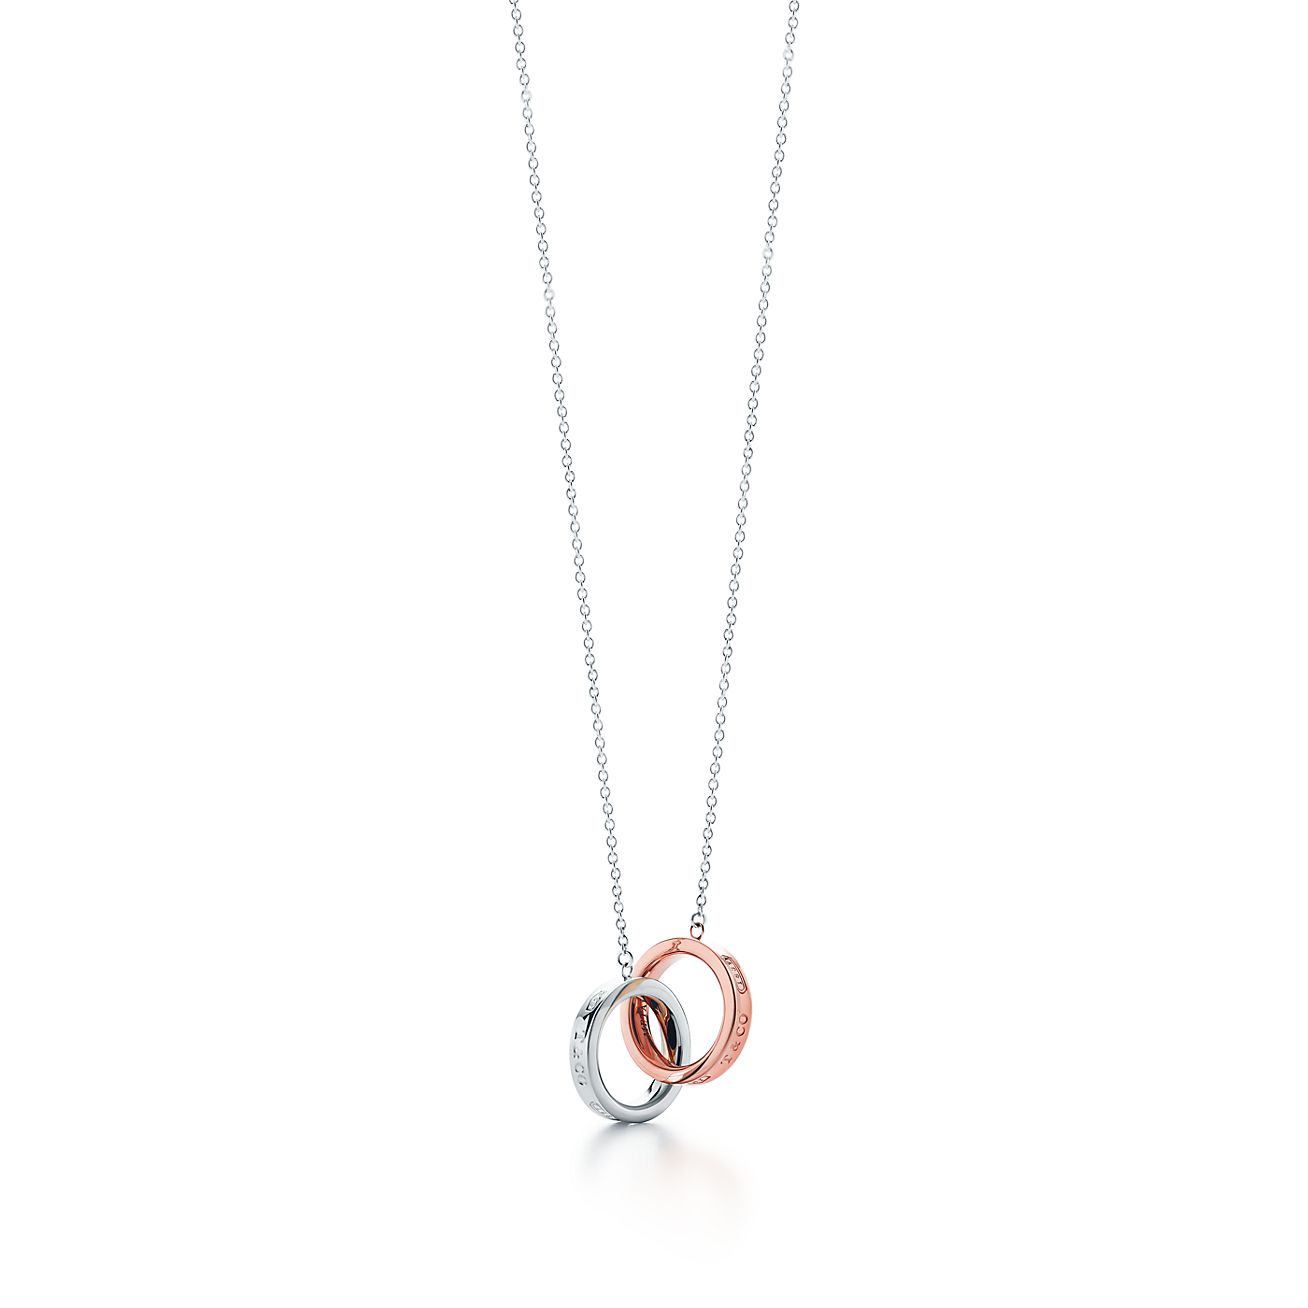 Tiffany 1837® interlocking pendant in 